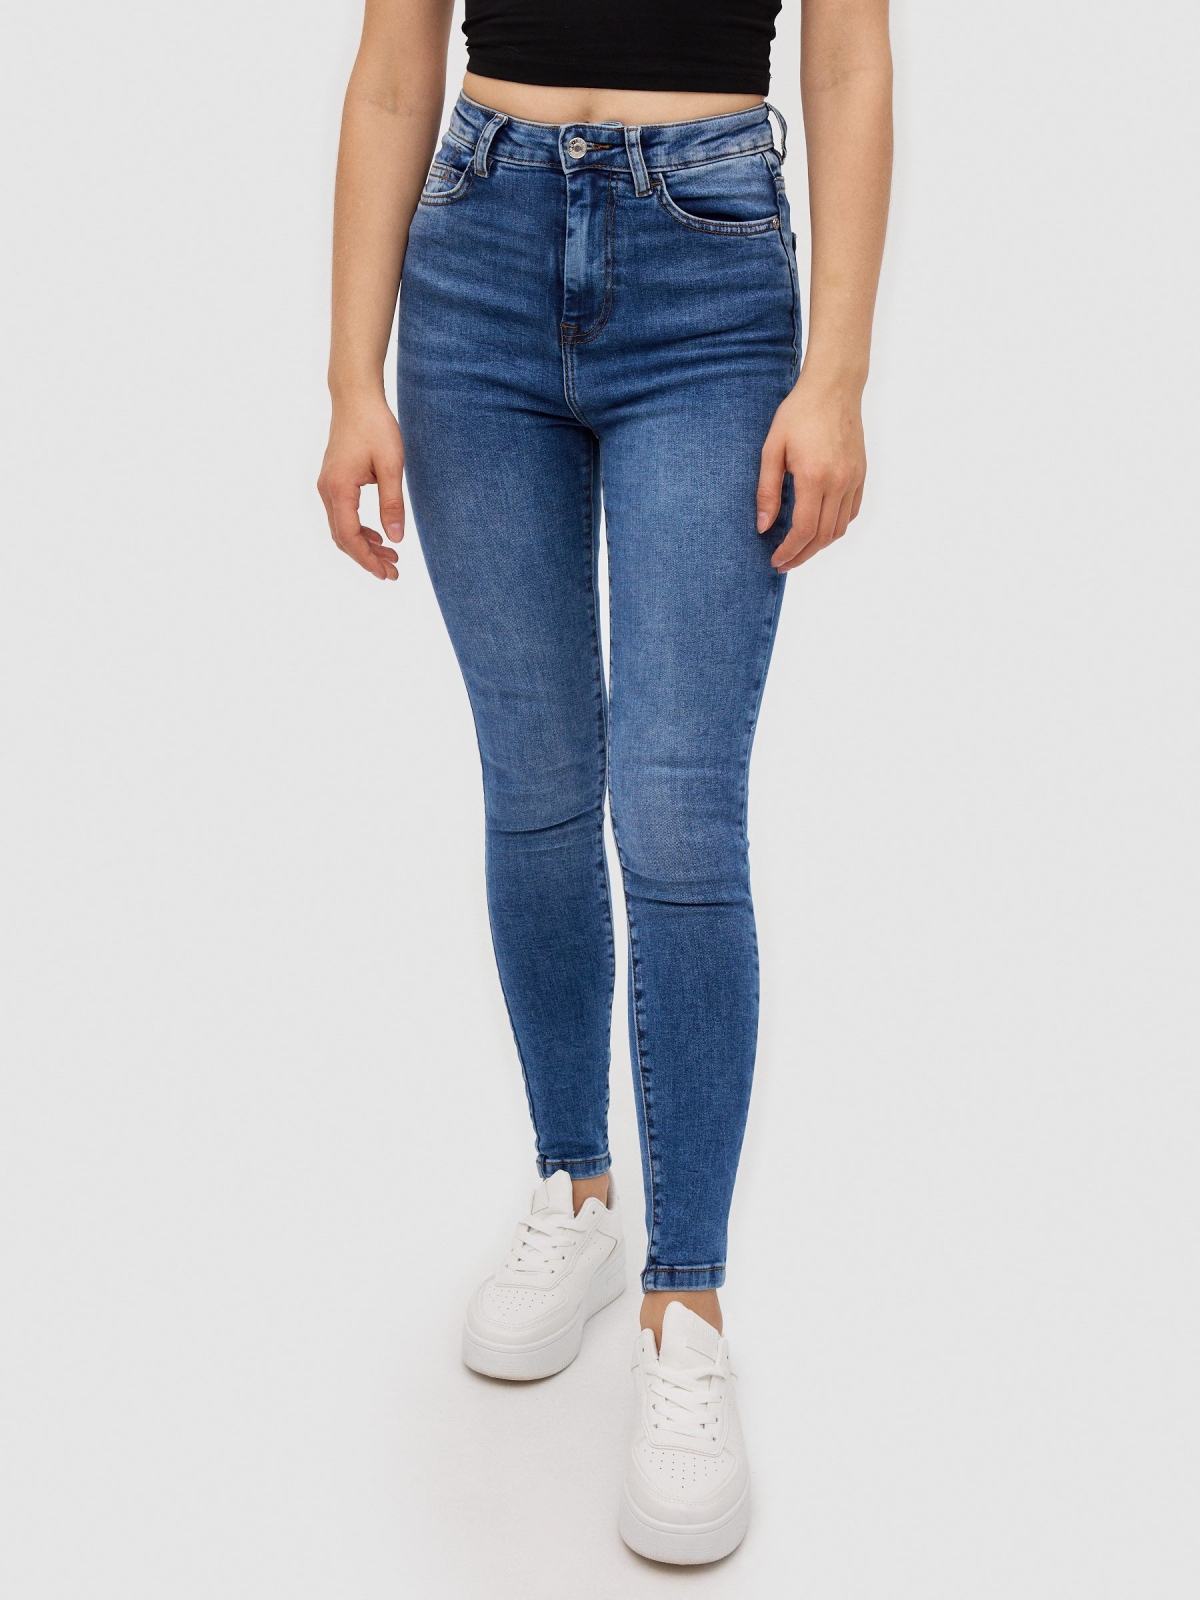 Jeans skinny denim azul vista media frontal